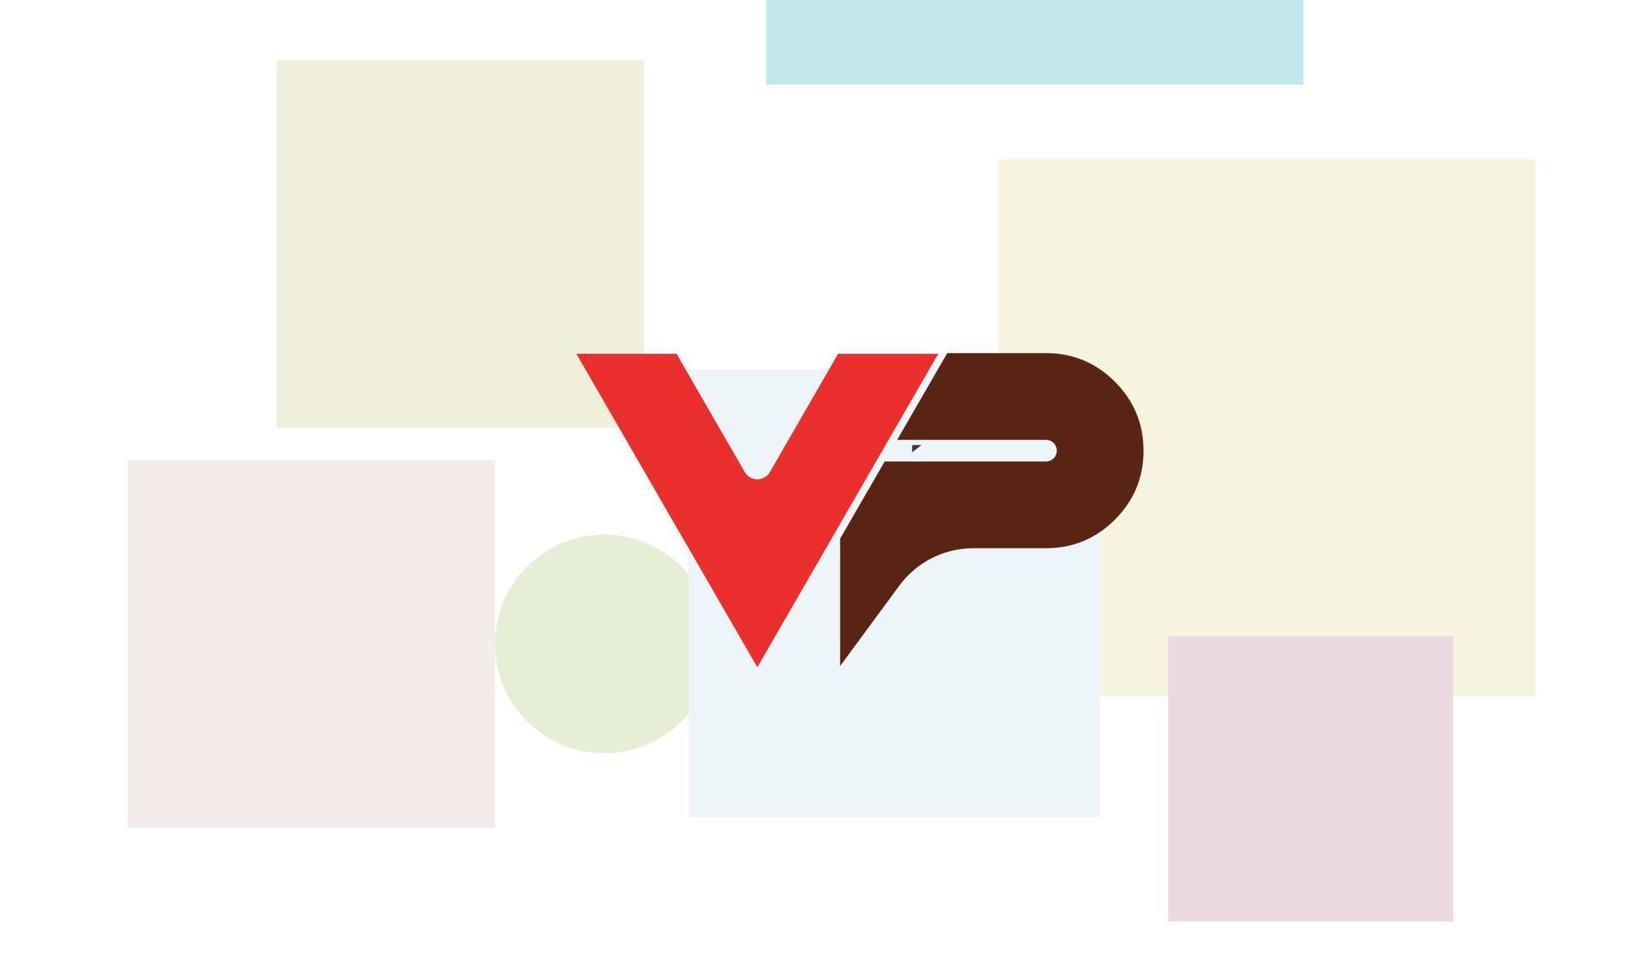 letras do alfabeto iniciais monograma logotipo vp, pv, v e p vetor